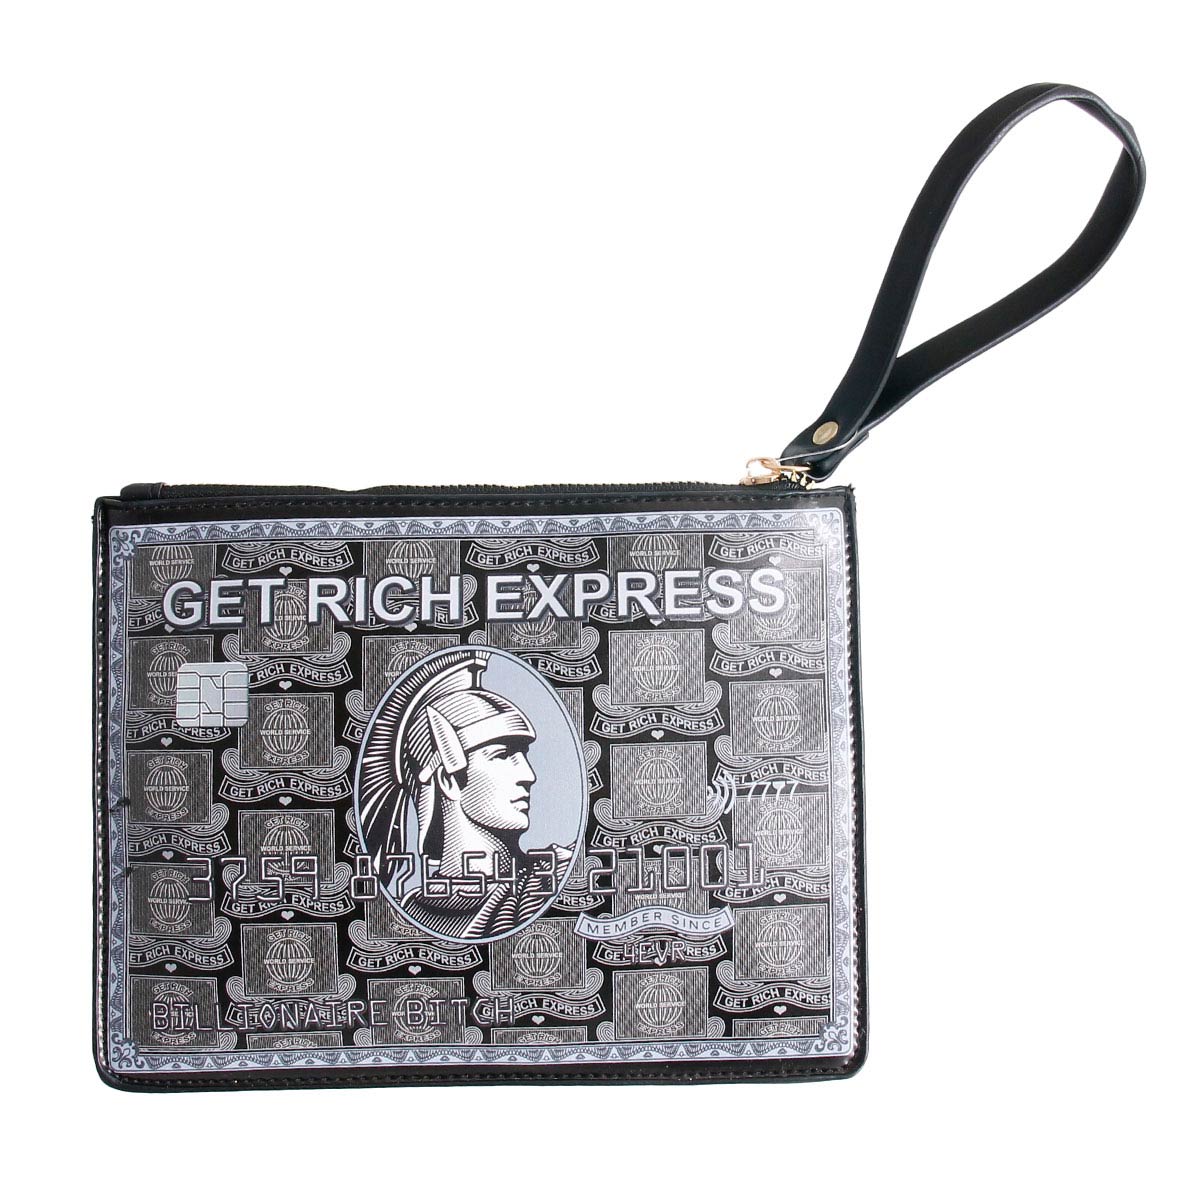 Black Express Card Clutch